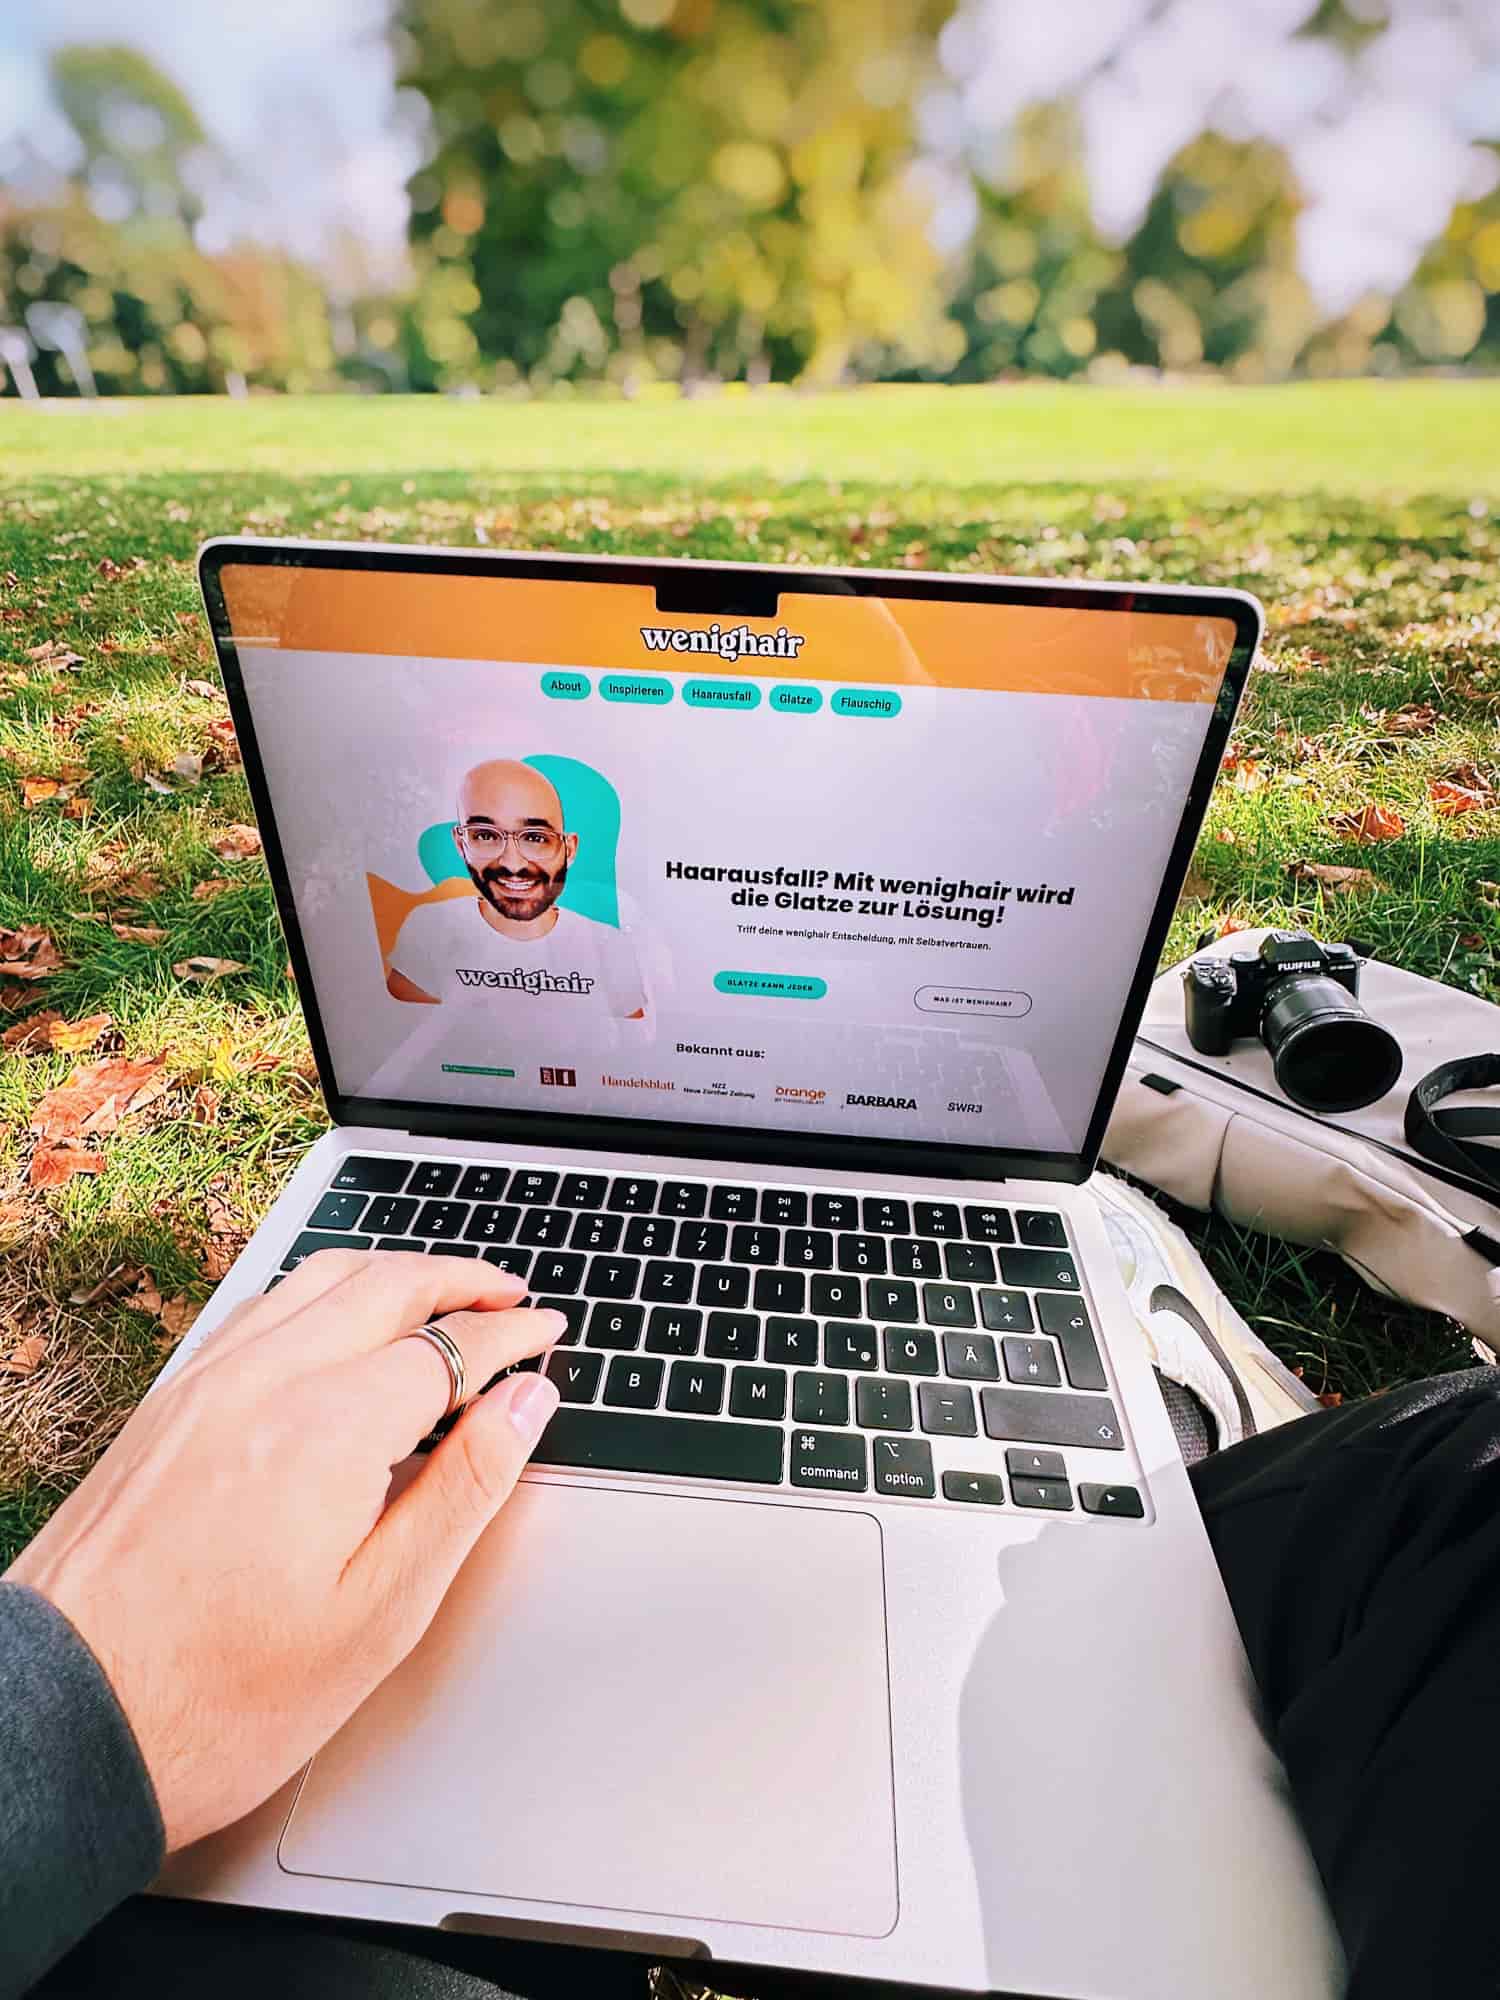 Arbeiten im Park mit Laptop, zeigt die Website wenighair für Haarverlust, kreative Outdoor-Arbeitsweise eines UX Designers